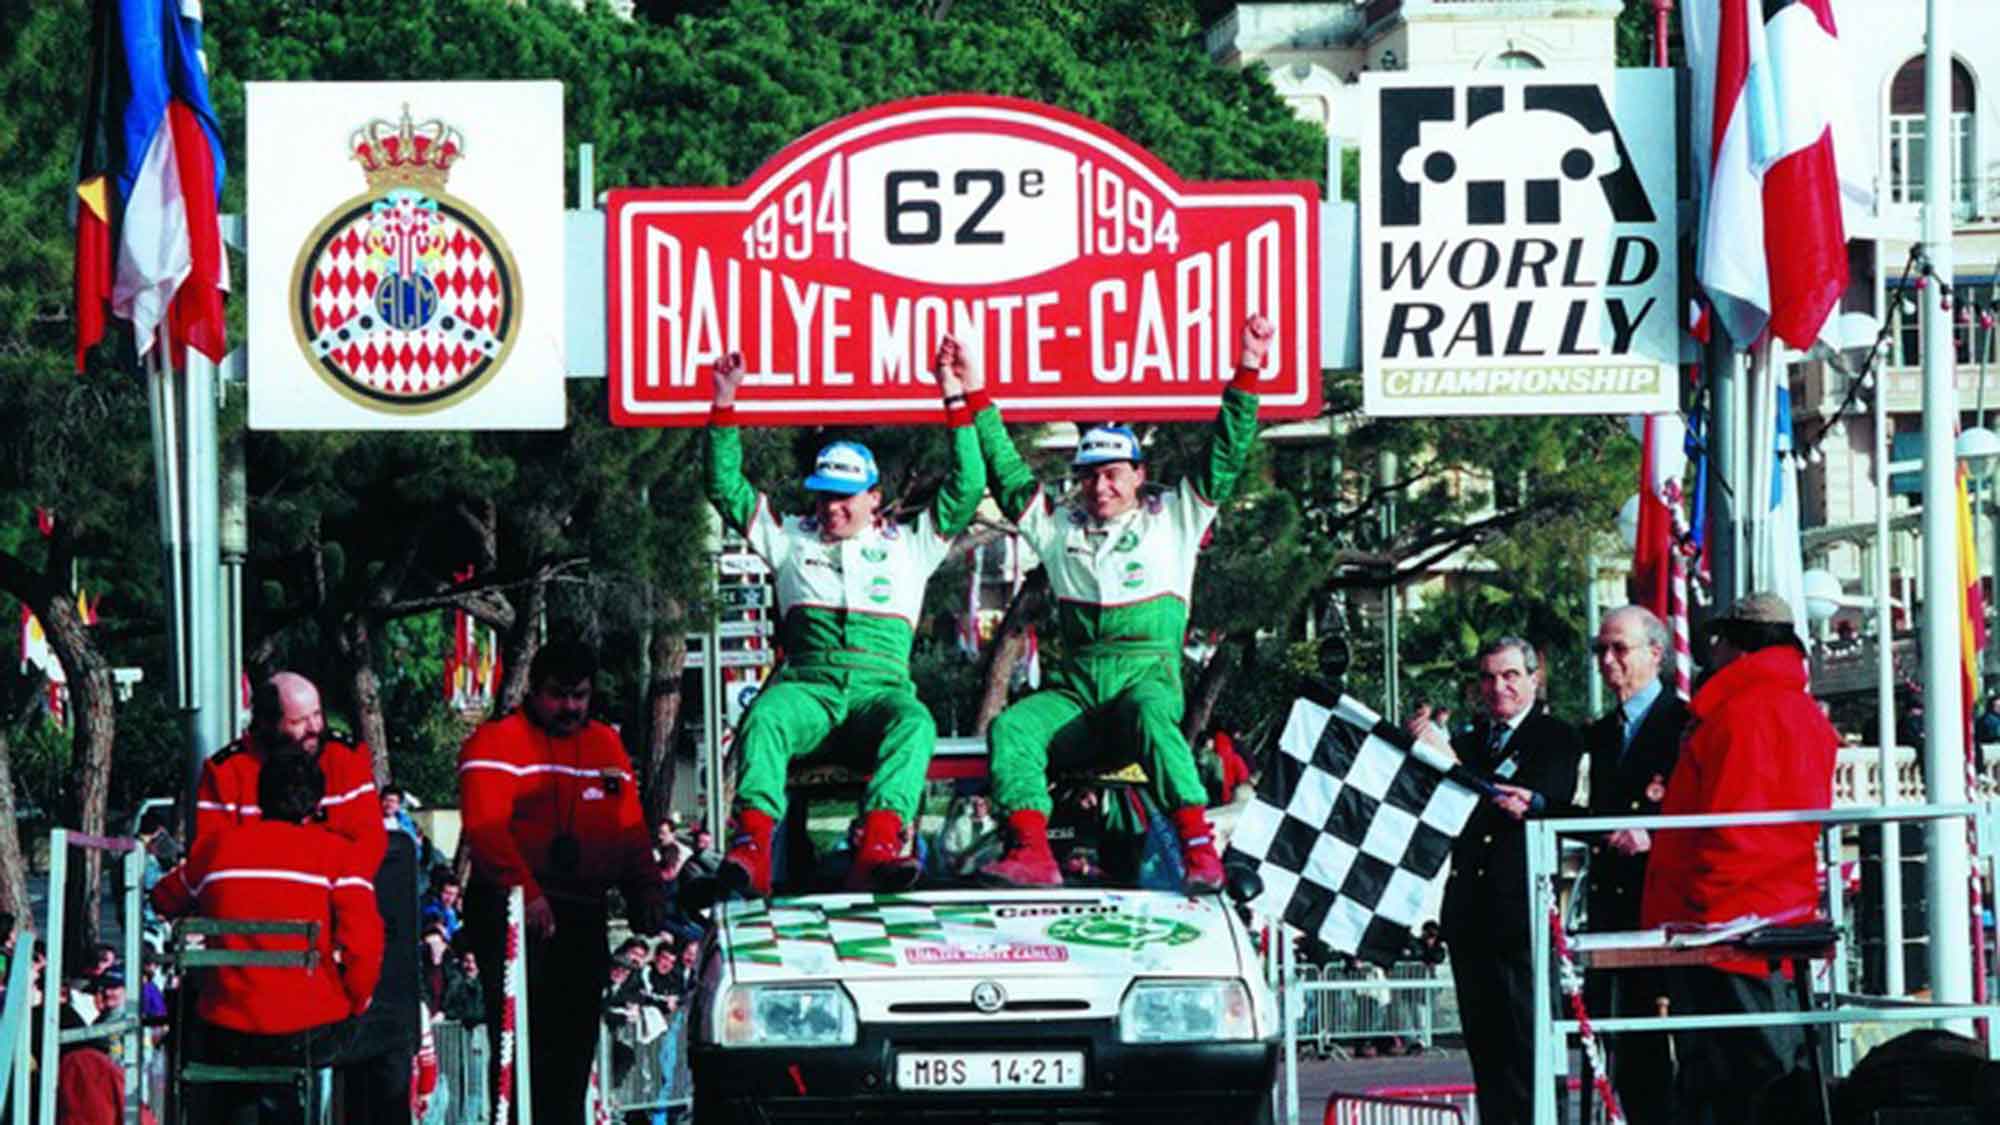 Siegesserie bei der Rallye Monte Carlo: Vor 30 Jahren gewann der Škoda Favorit zum 4. Mal in Folge seine Klasse